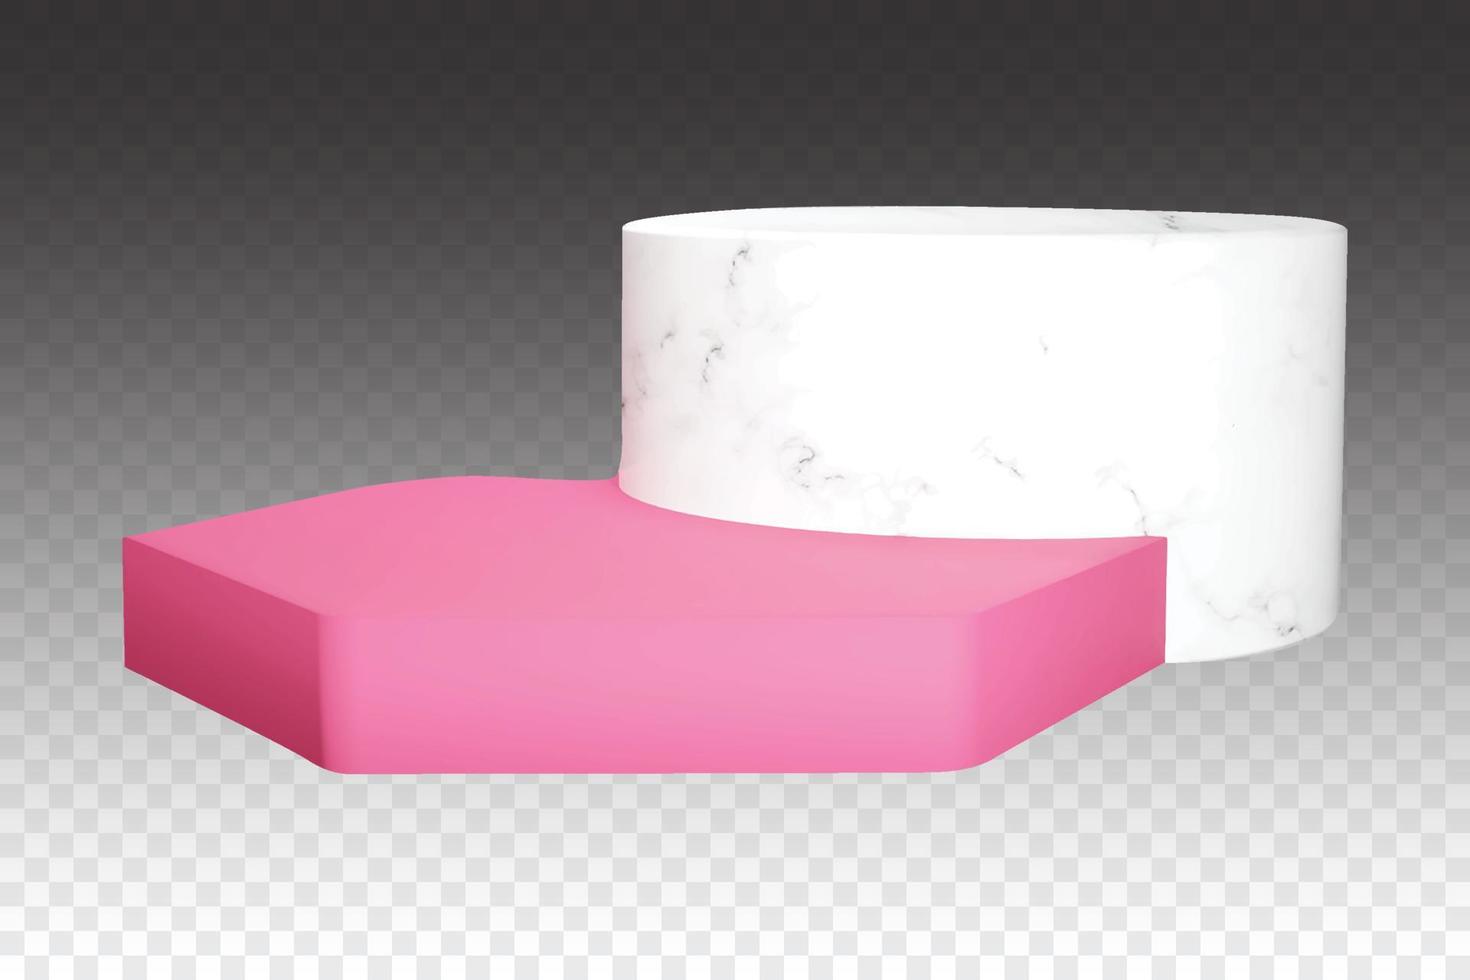 composición de doble podio blanco y rosa. pedestal de mármol vectorial con textura de piedra realista. elementos gráficos para banner o anuncio vector